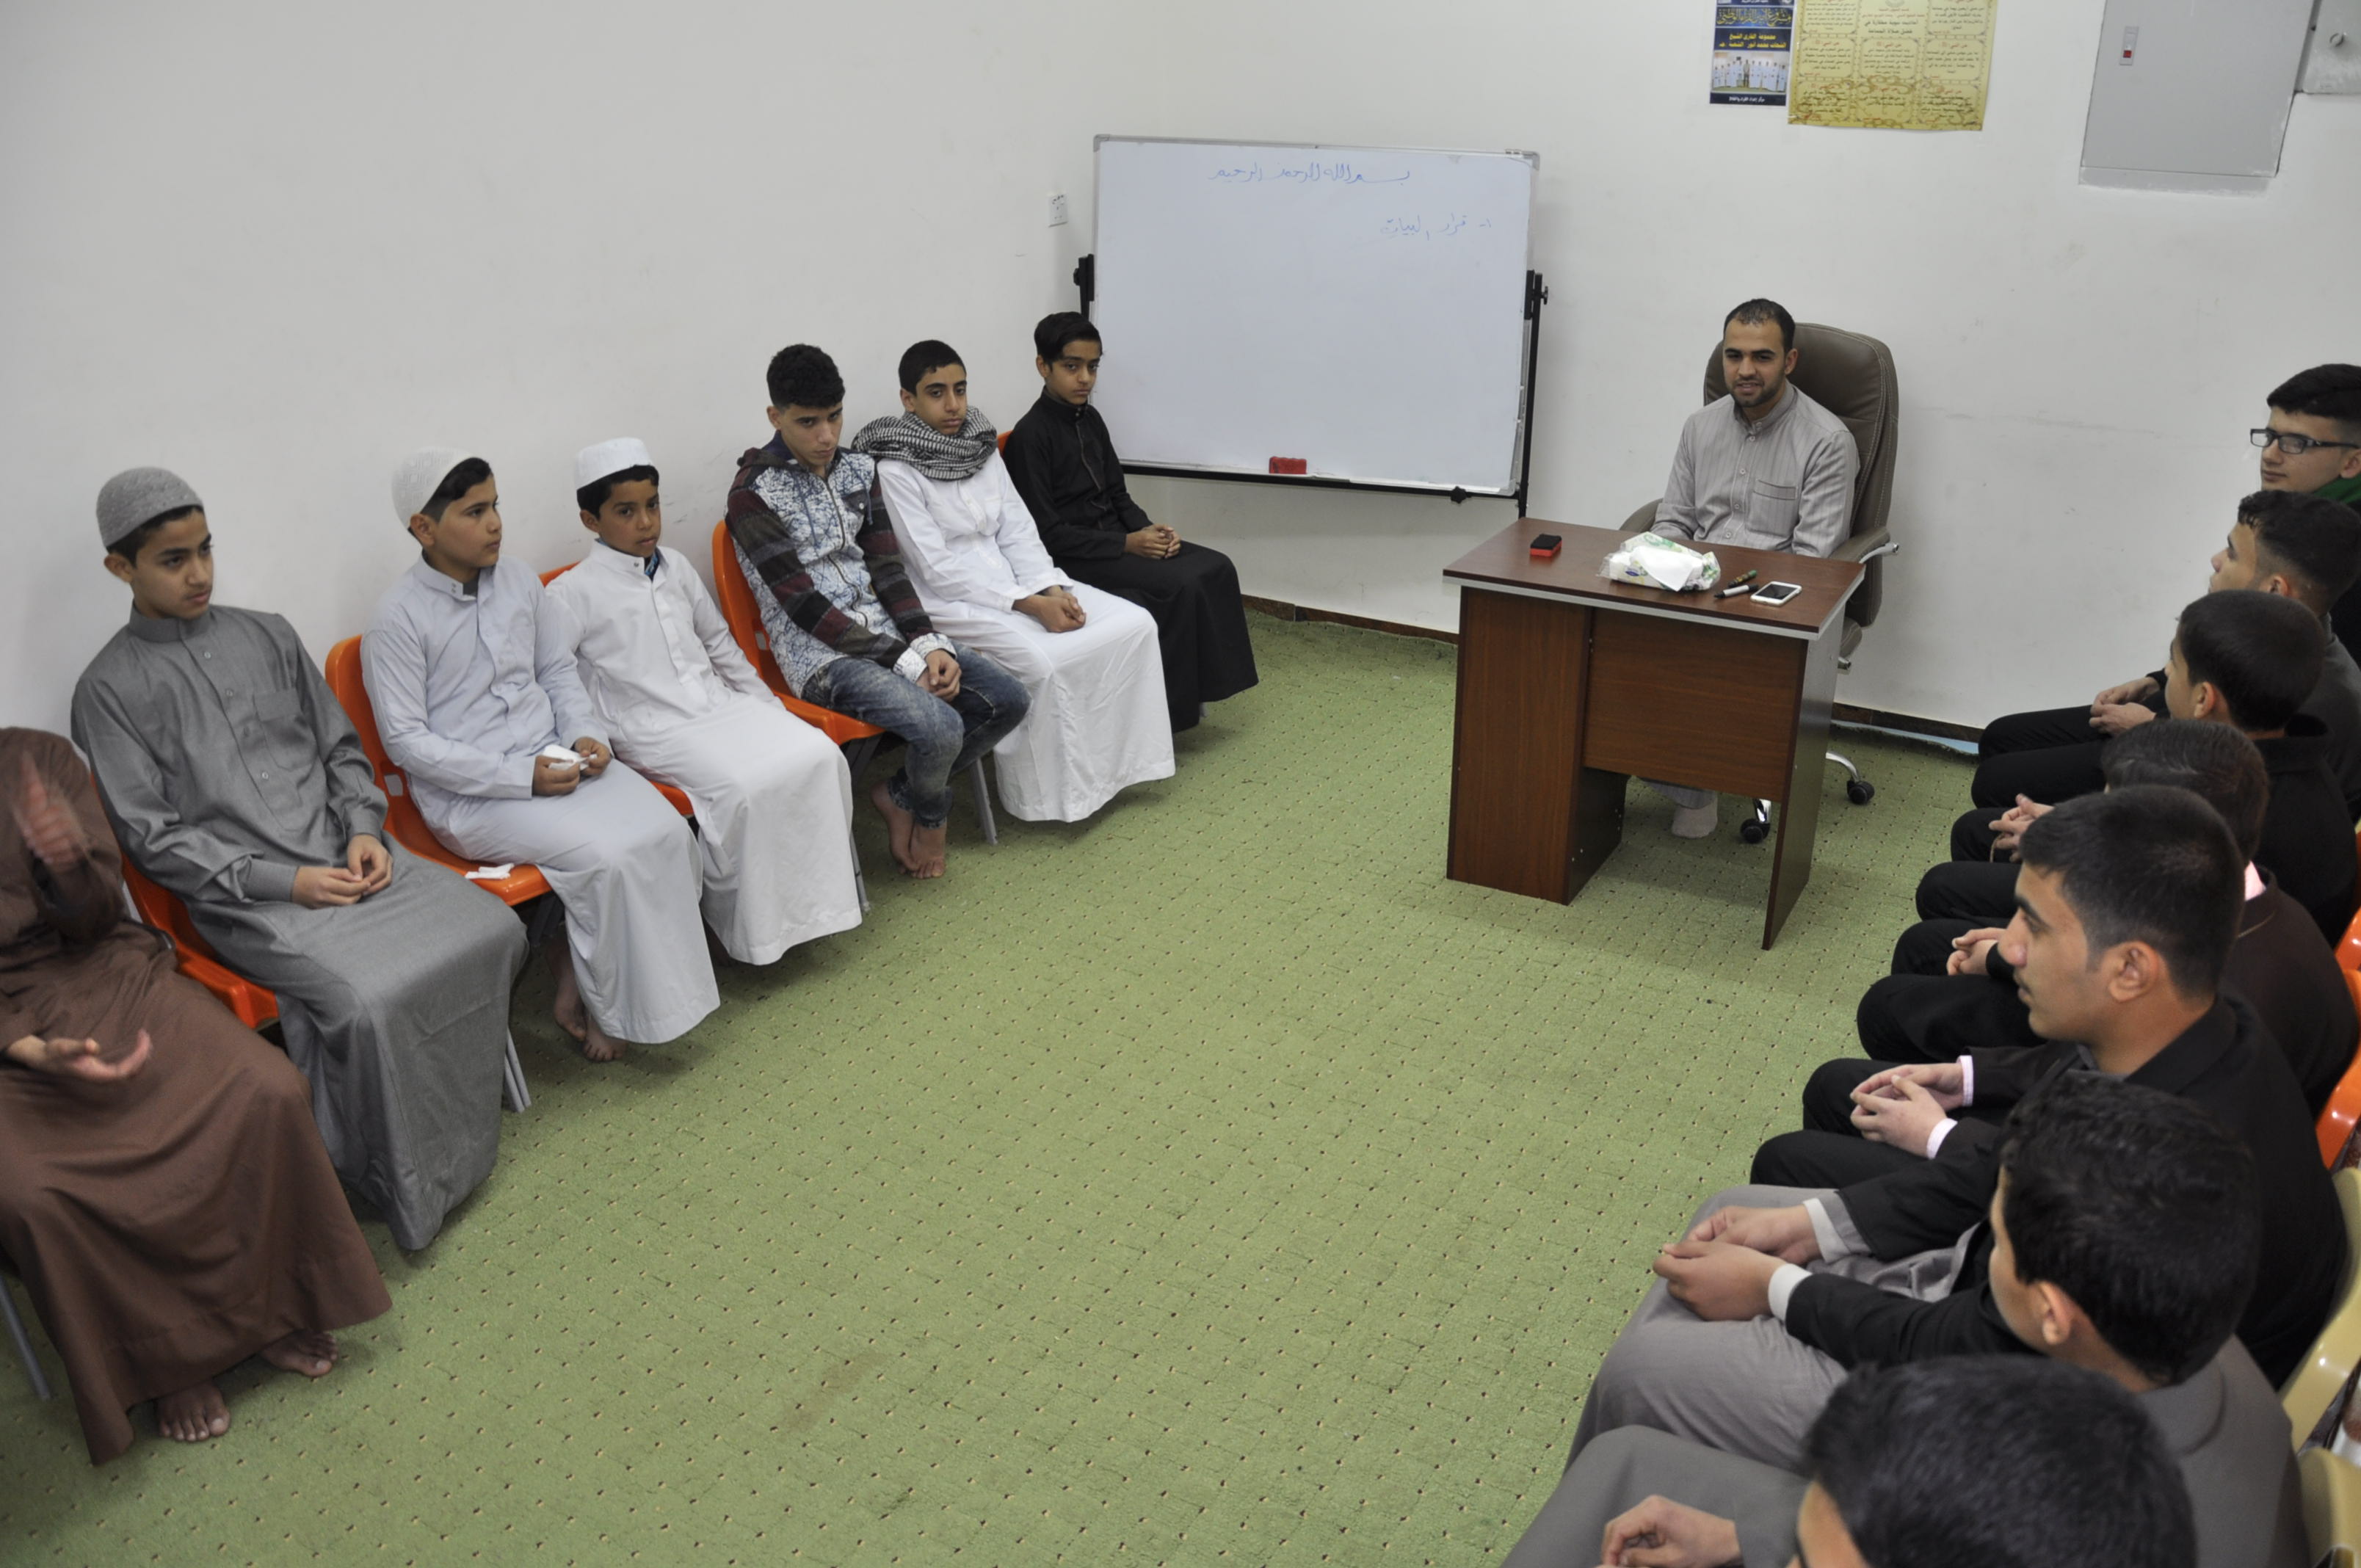 معهد القرآن الكريم يعلن انطلاق المرحلة الثانية من مشروع أمير القراء الوطني 